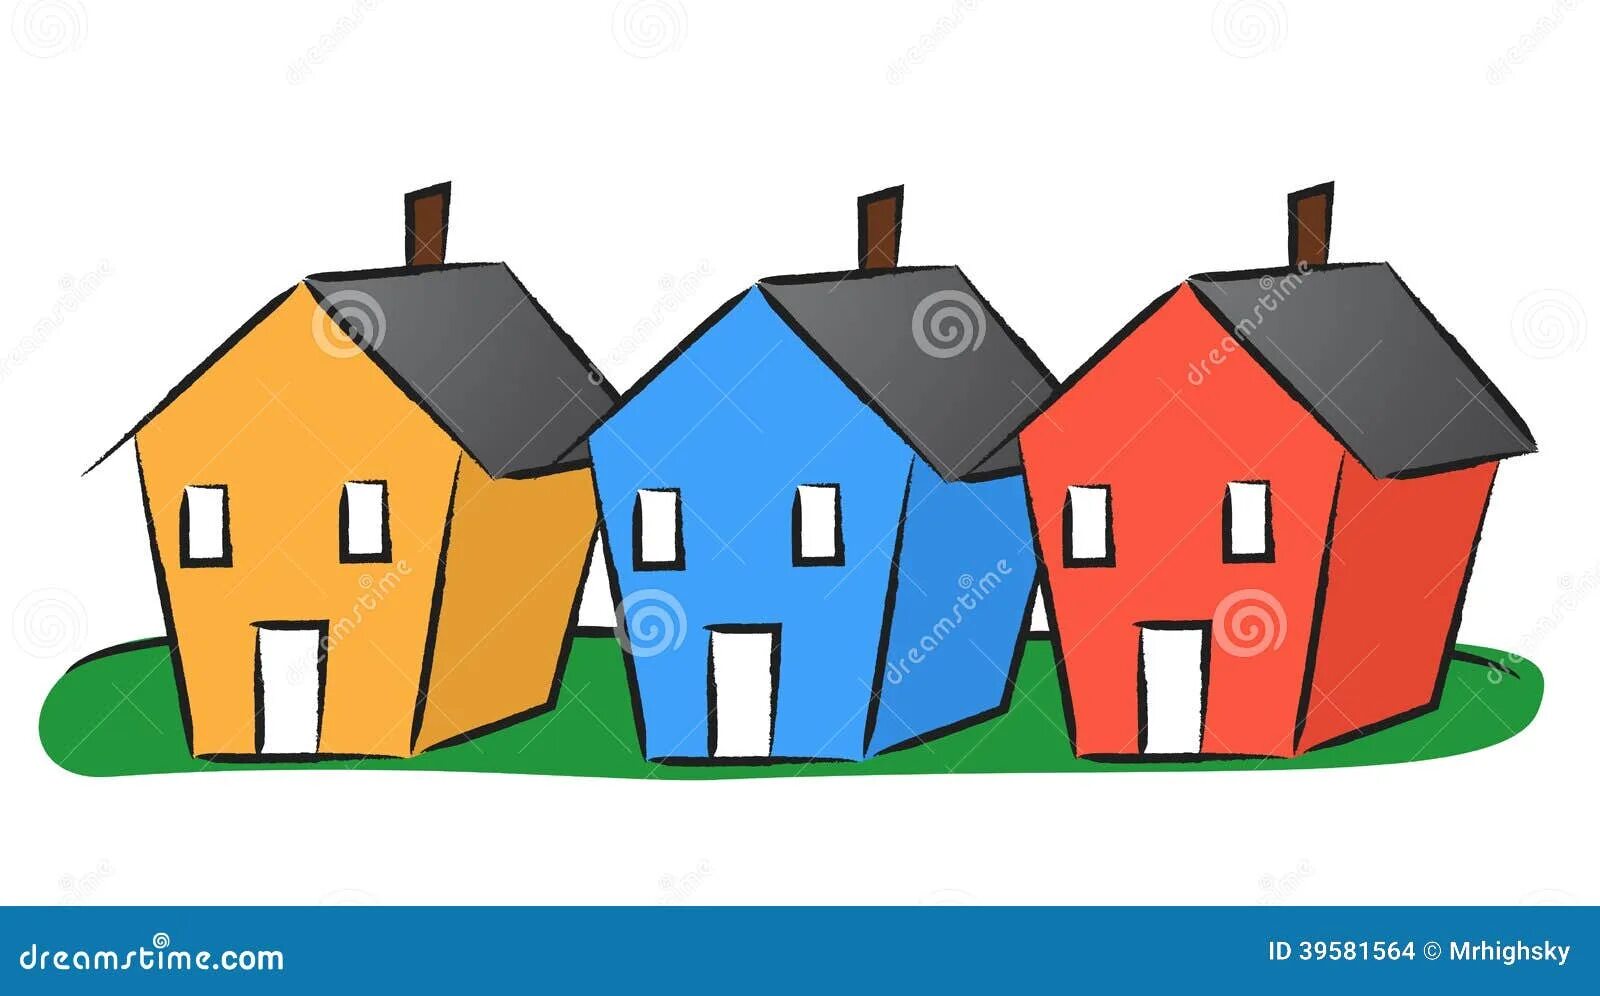 Стоят три дома деревянный. Домики разных цветов. Три домика. Домики разного цвета. Домики разных цветов для детей.